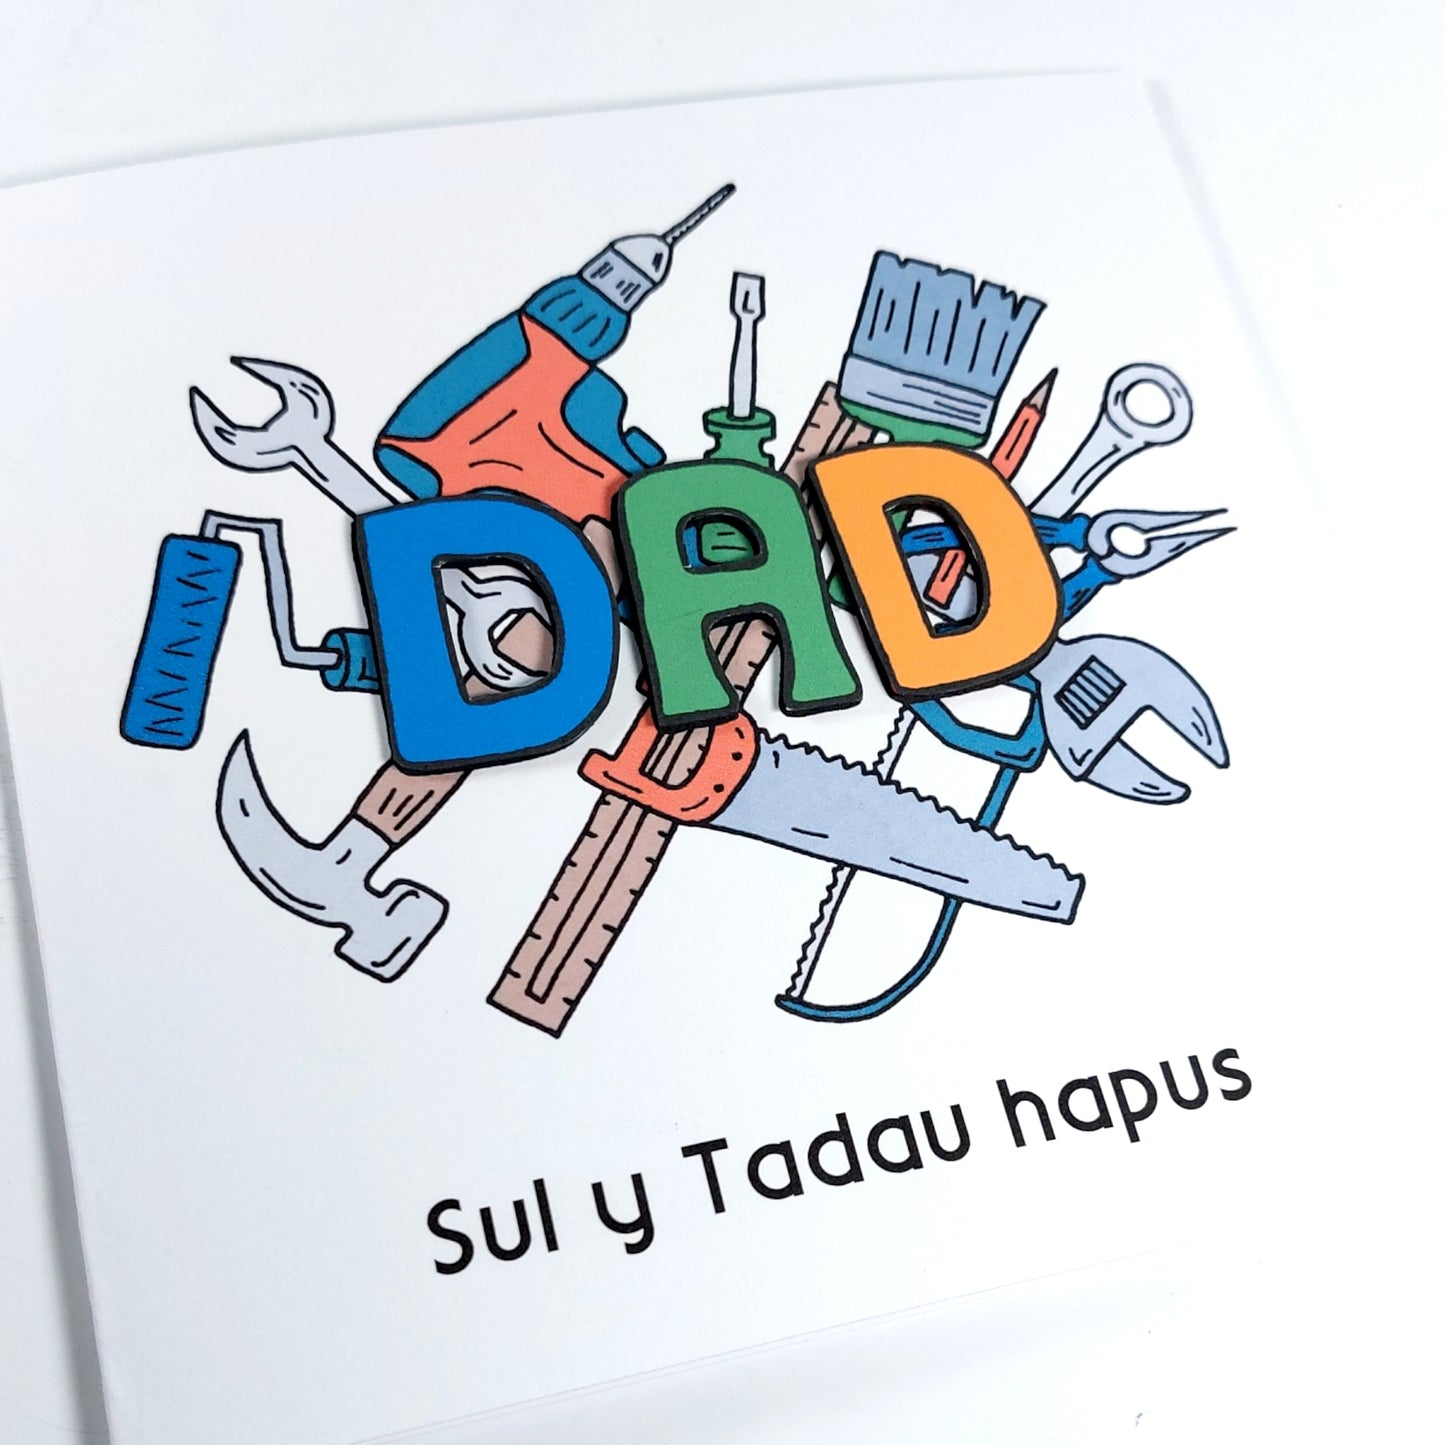 Dad DIY Sul y Tadau hapus (fathers Card) - Welsh